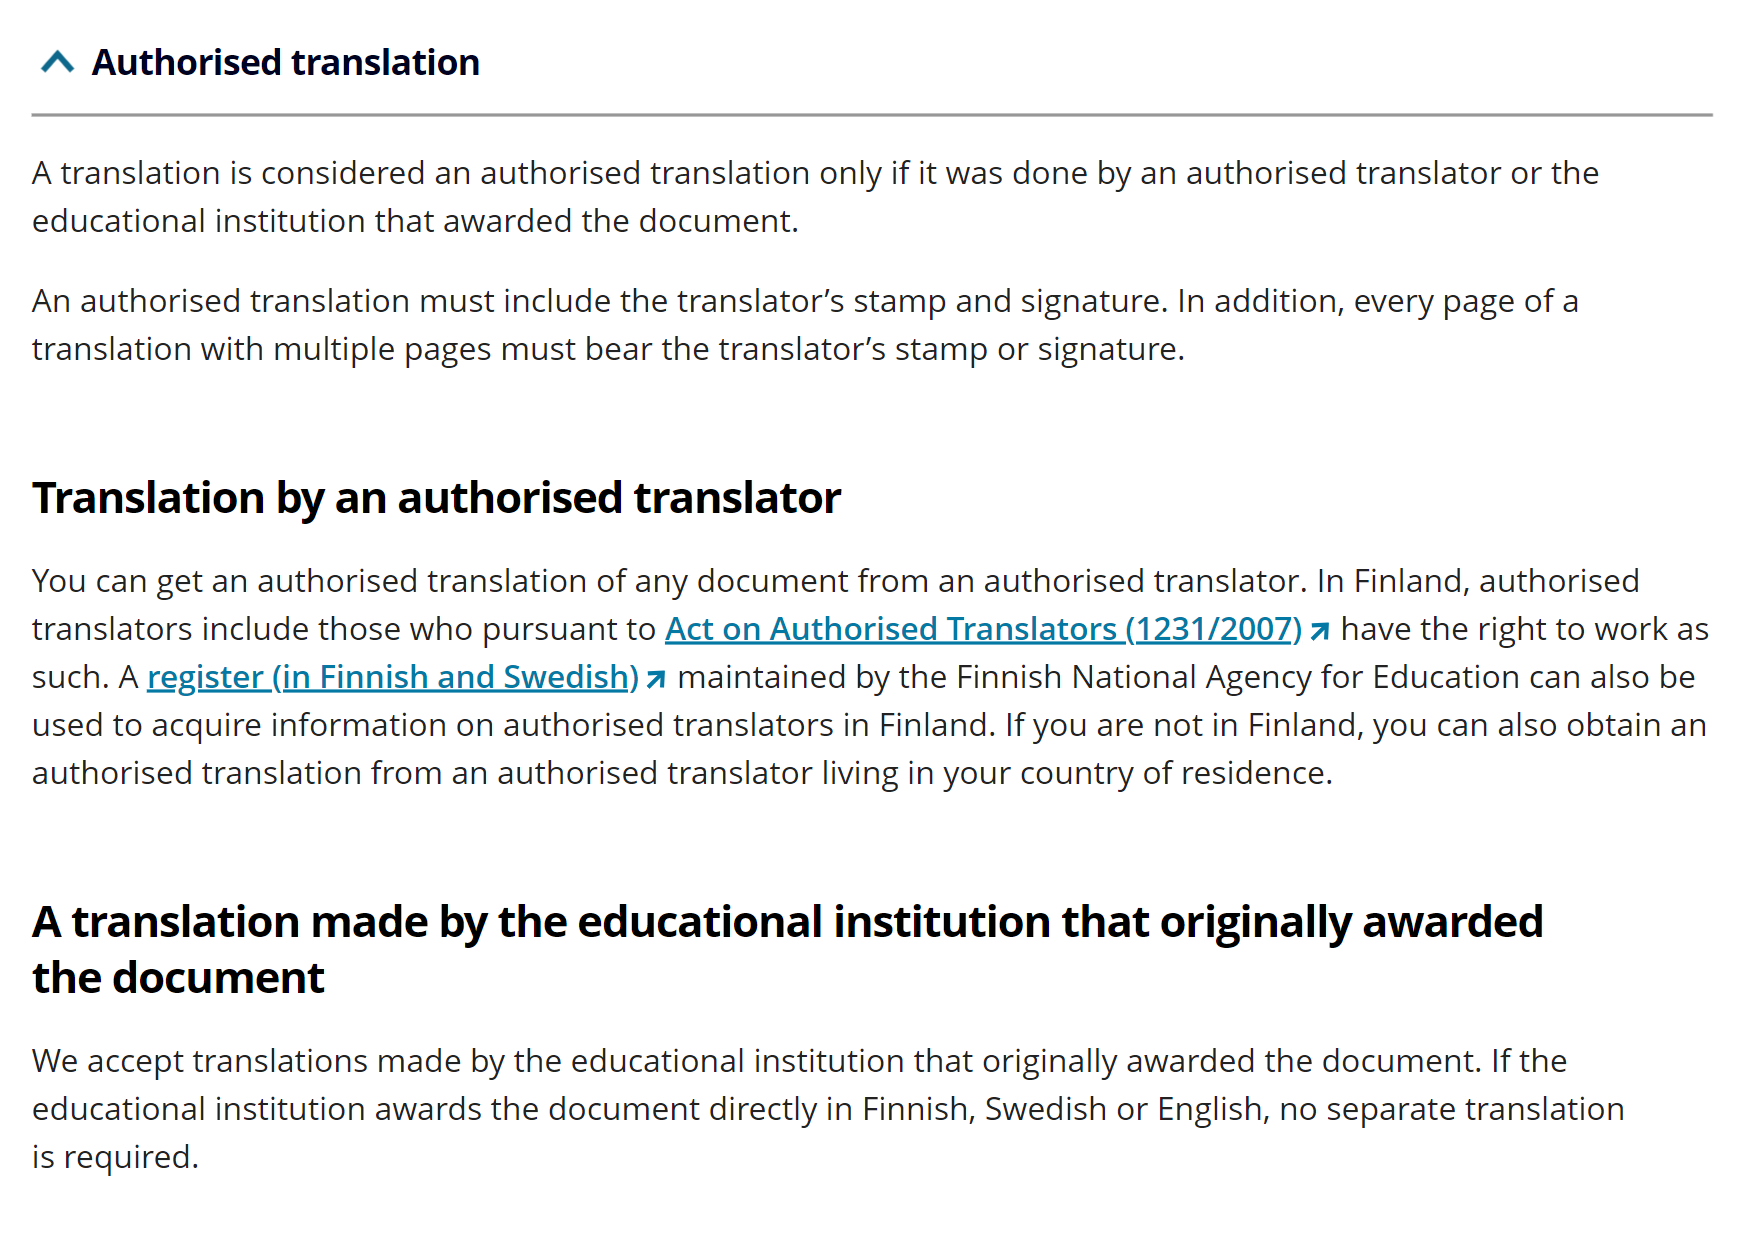 Университет Хельсинки принимает два вида перевода: заверенный финскими нотариусами или университетский. Конечно, получить второй намного проще. Источник: helsinki.fi